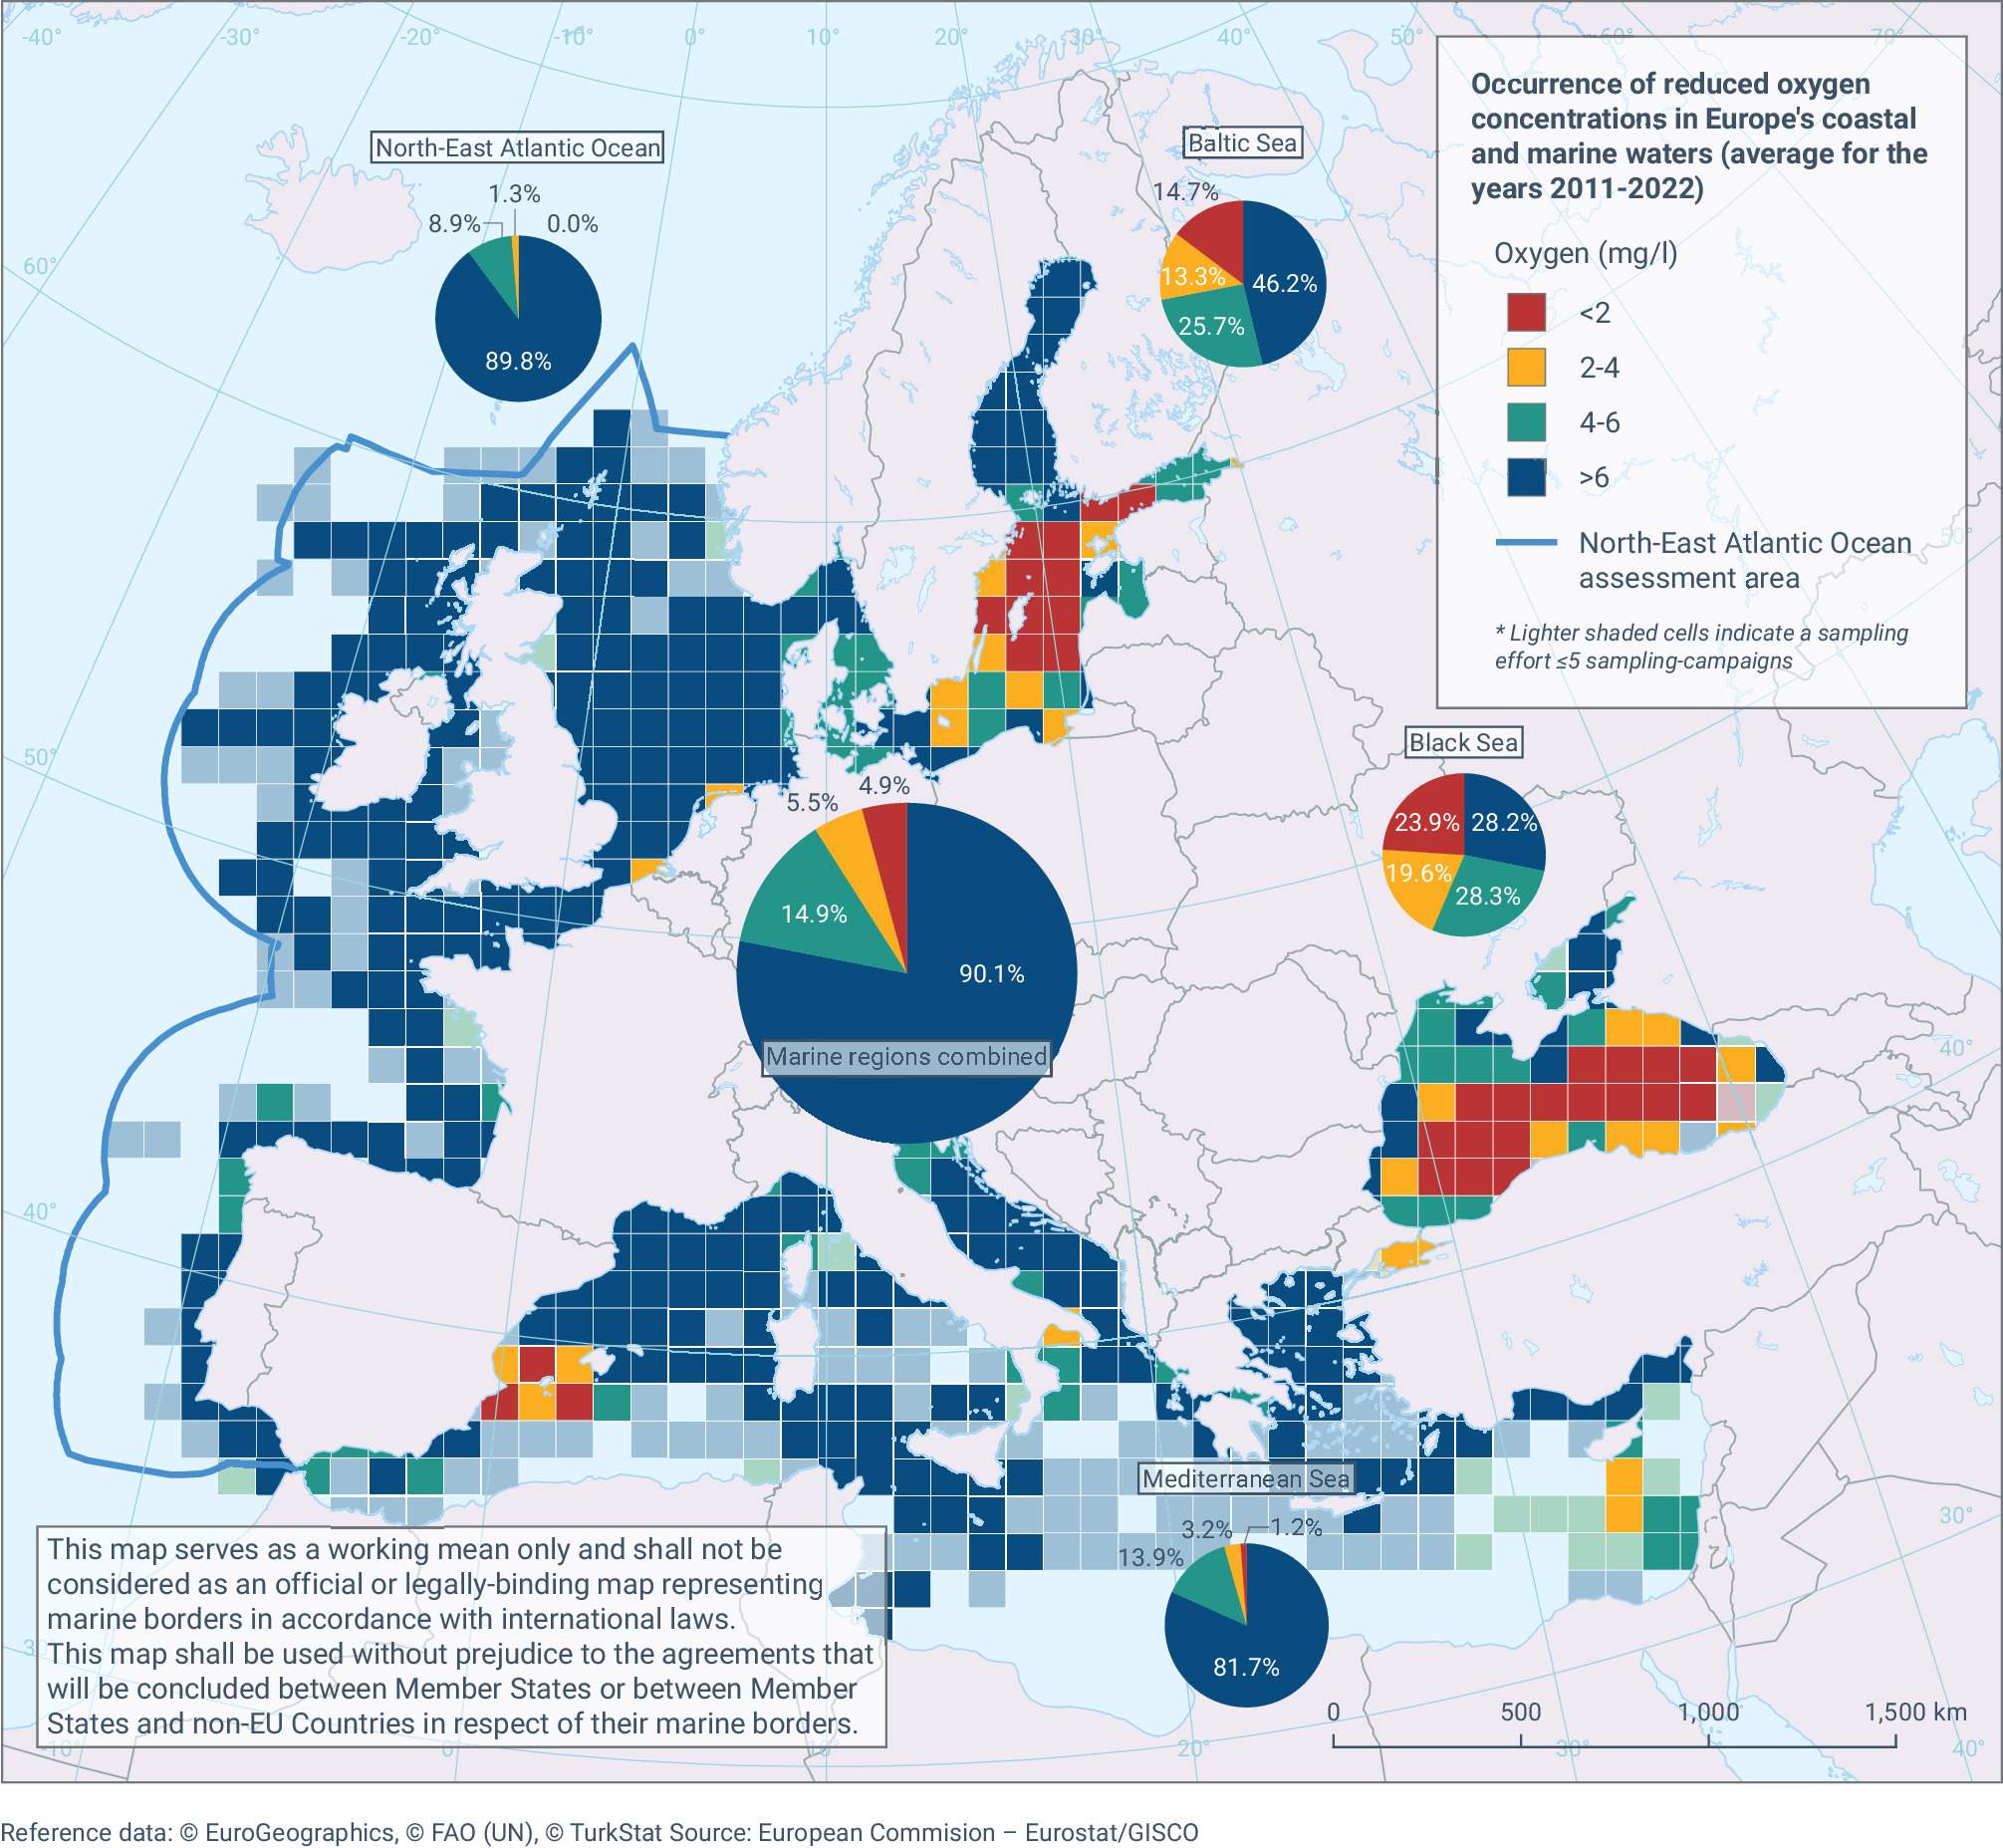 Ocurrència de concentracions reduïdes d'oxigen a les aigües costaneres i marines d'Europa (mitjana dels anys 2011 2022)